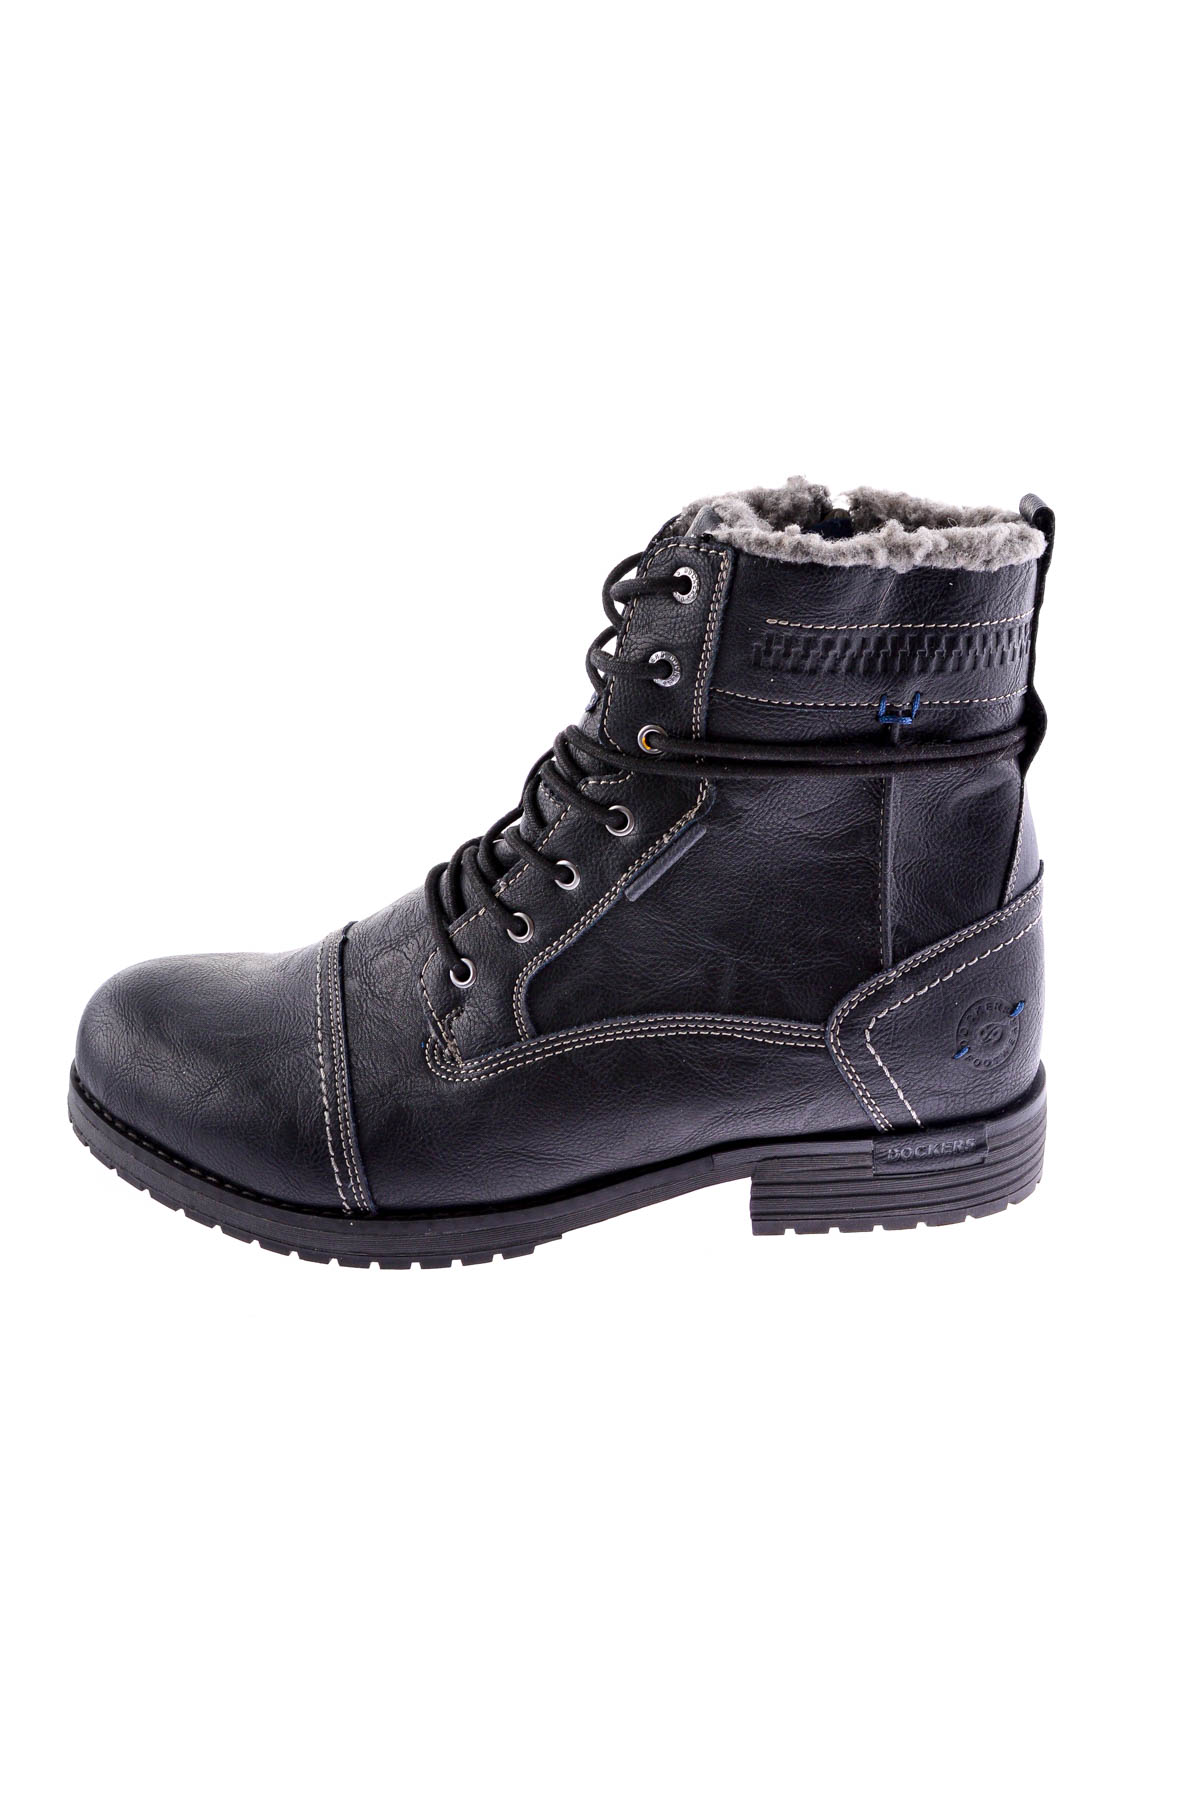 Men's boots - Dockers by Gerli - 0